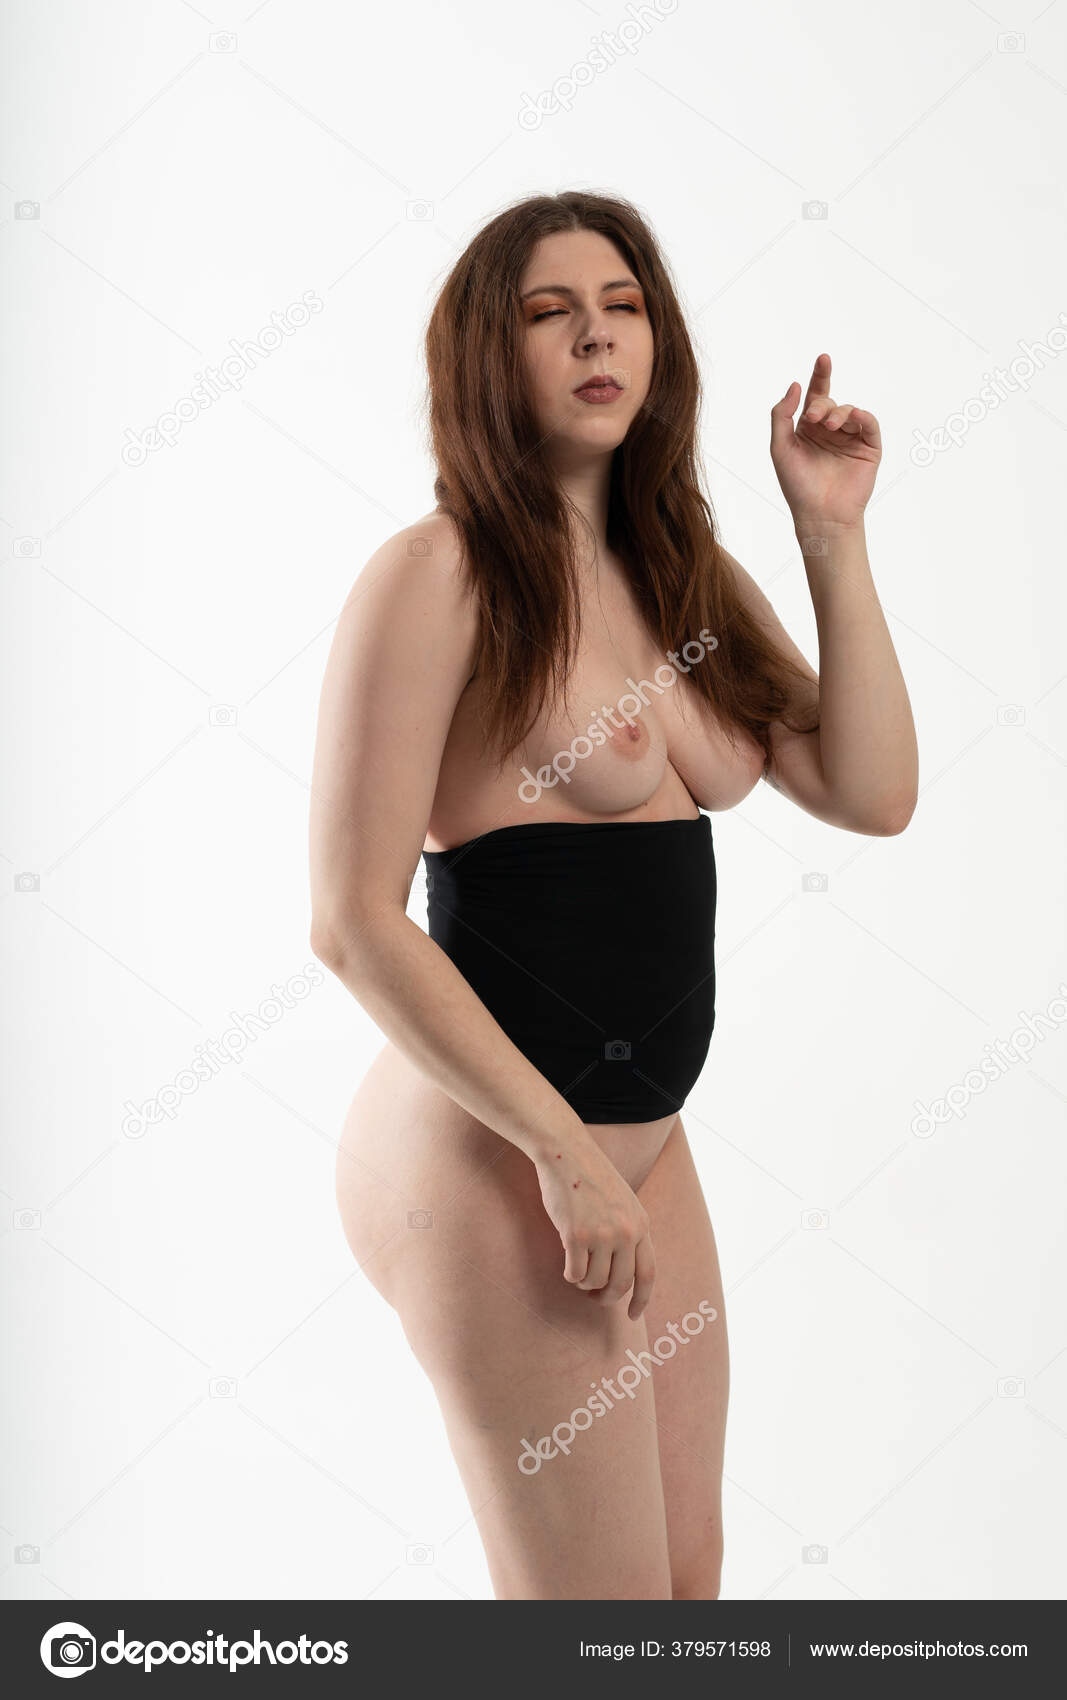 https://st4n.depositphotos.com/10086424/37957/i/1600/depositphotos_379571598-stock-photo-young-beautiful-girl-posing-nude.jpg